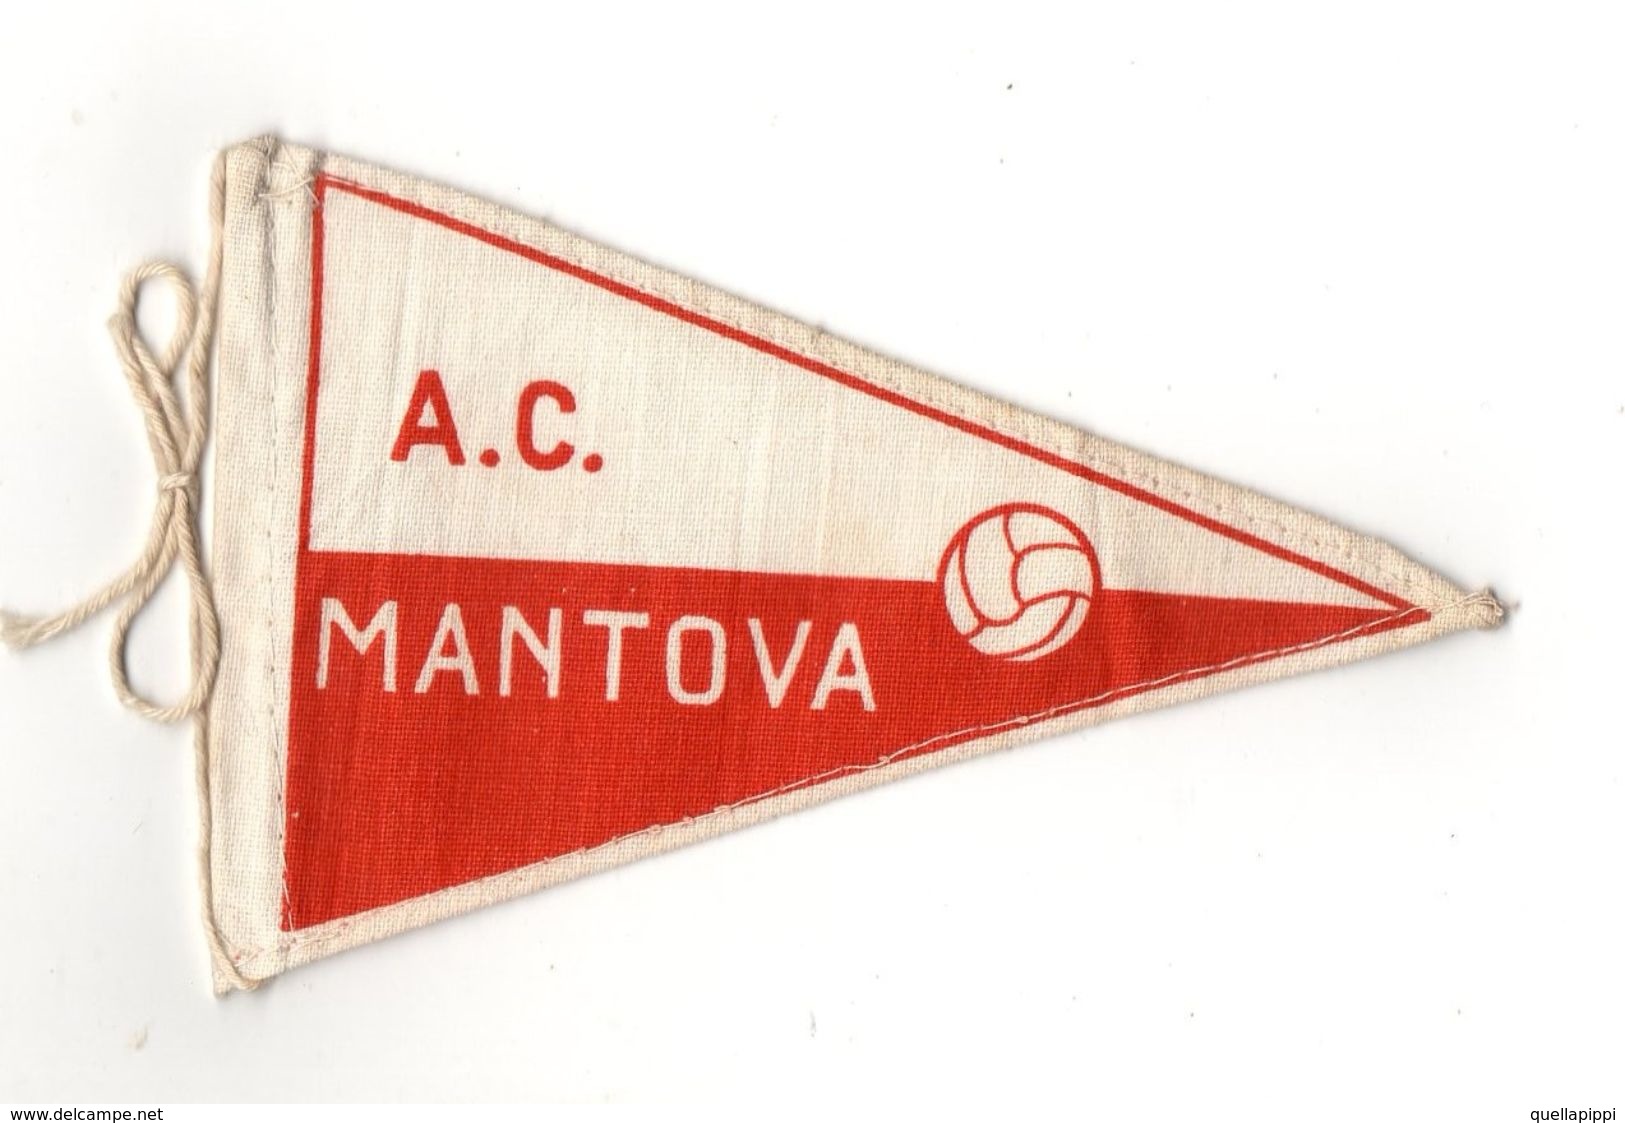 07129 "MANTOVA A.C. FOOTBALL CLUB - BANDIERINA BIFRONTE IN STOFFA CON LEGACCI" ANNI '70 ORIG. - Habillement, Souvenirs & Autres